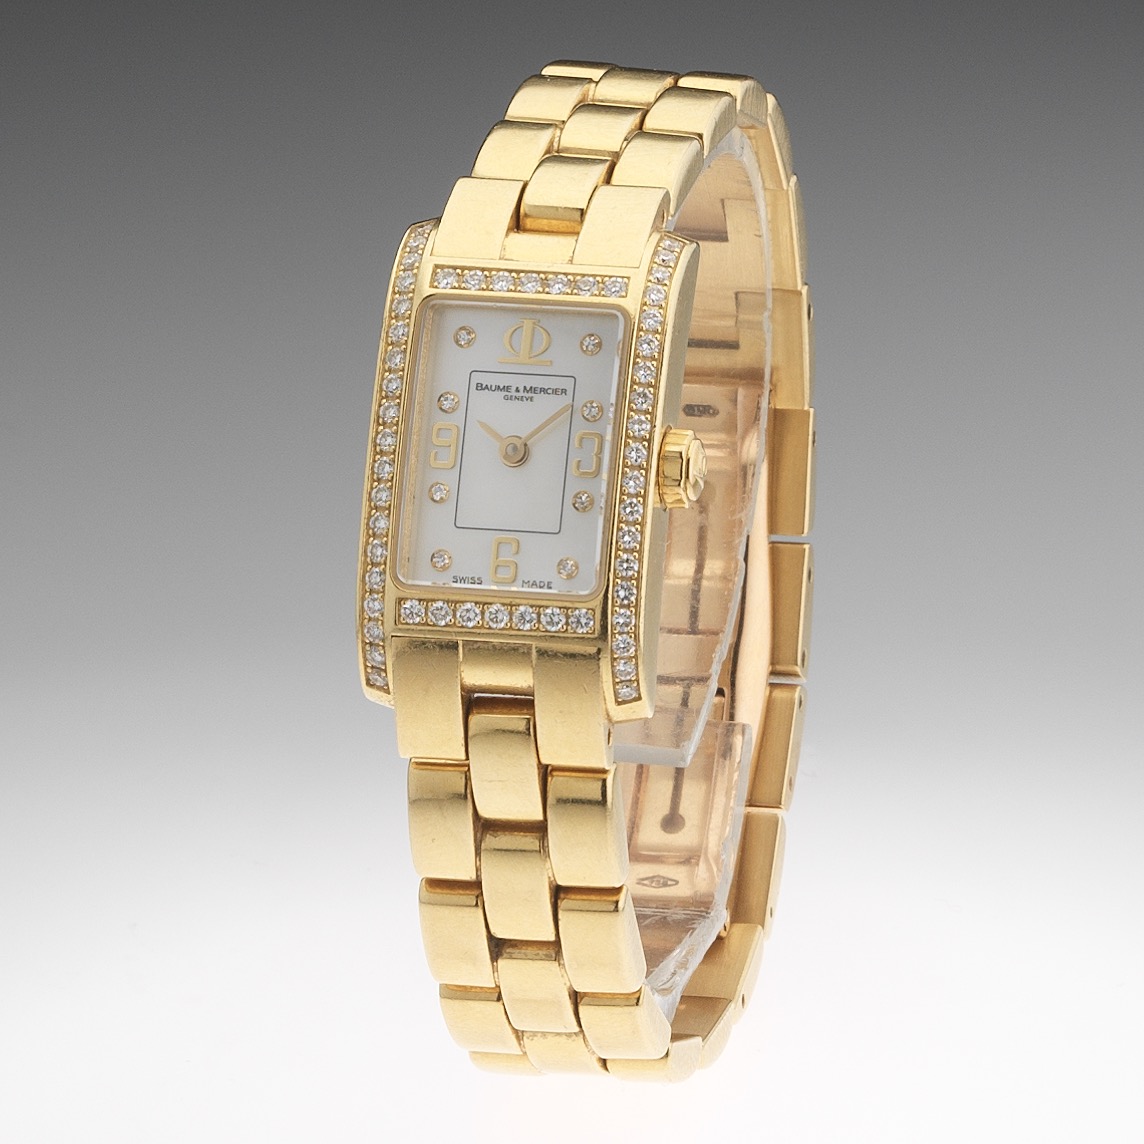 Baume Mercier Gold Watch | vlr.eng.br